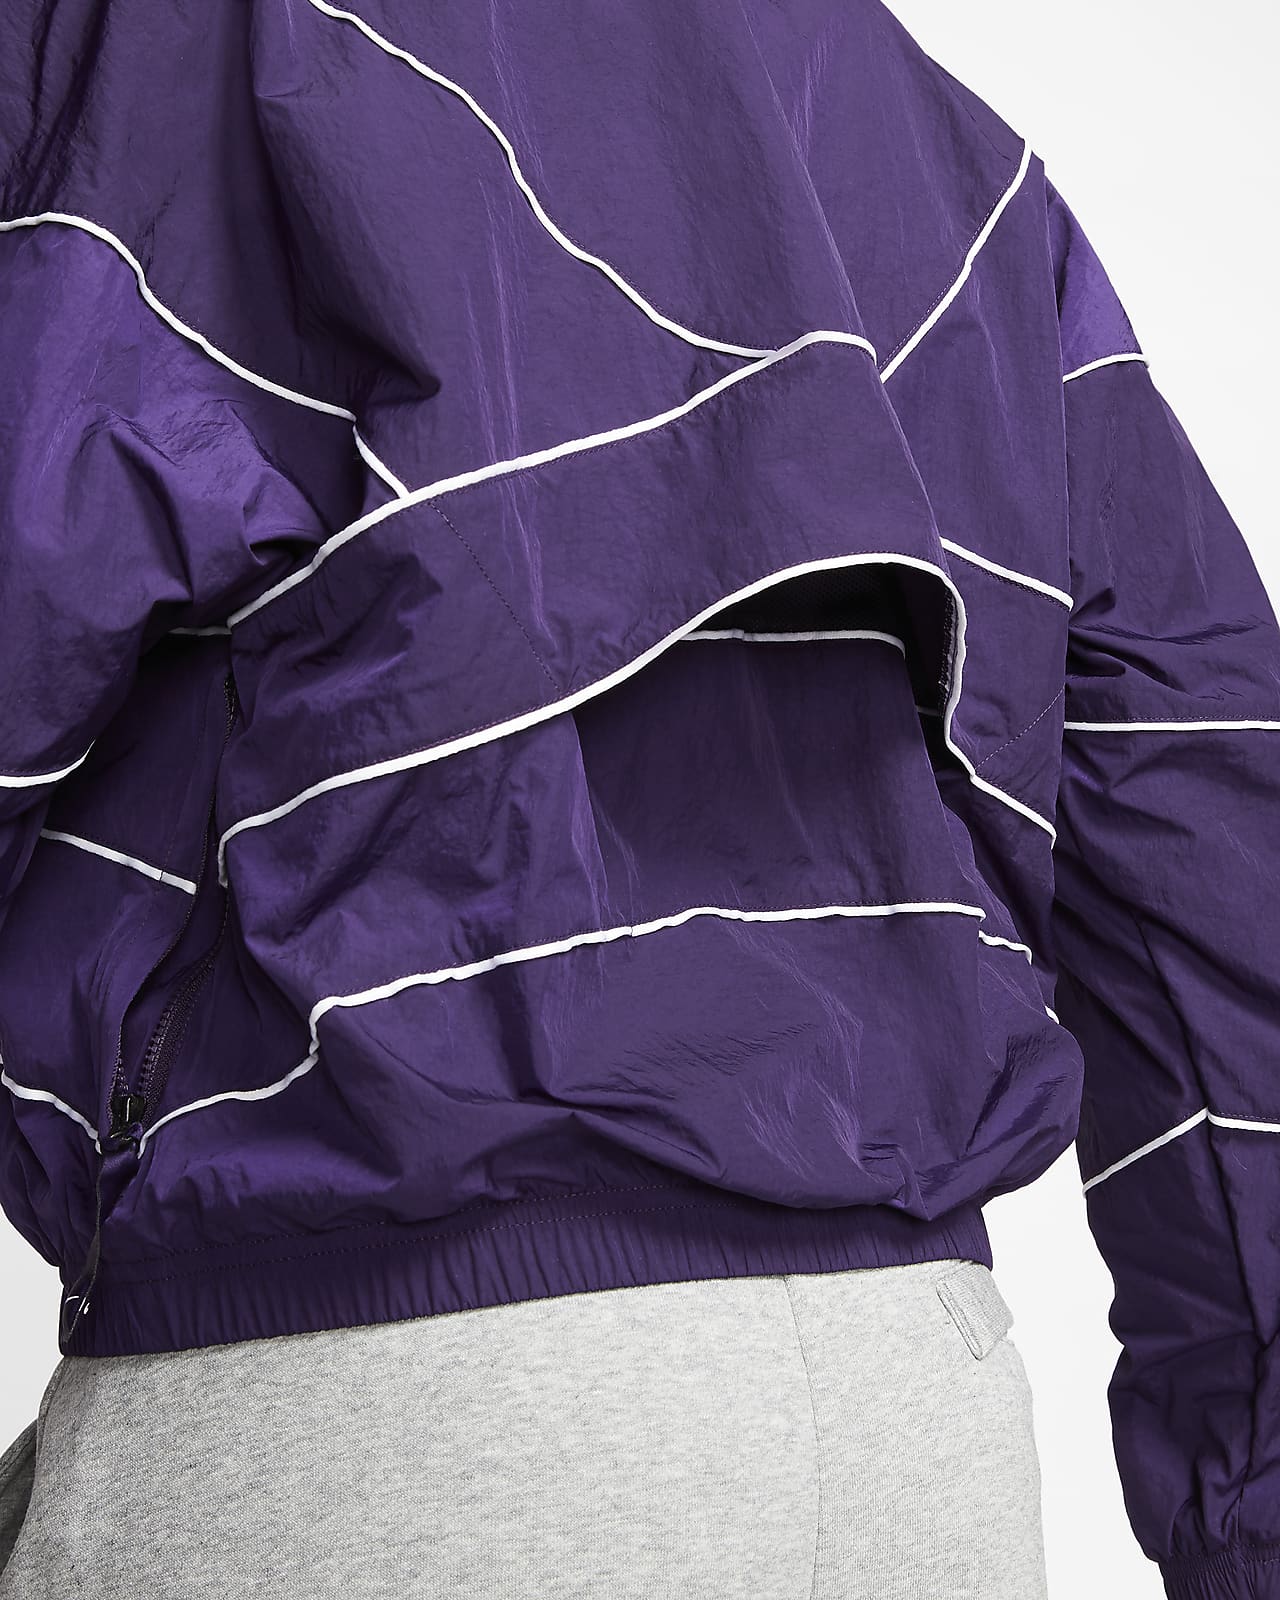 purple nike track jacket